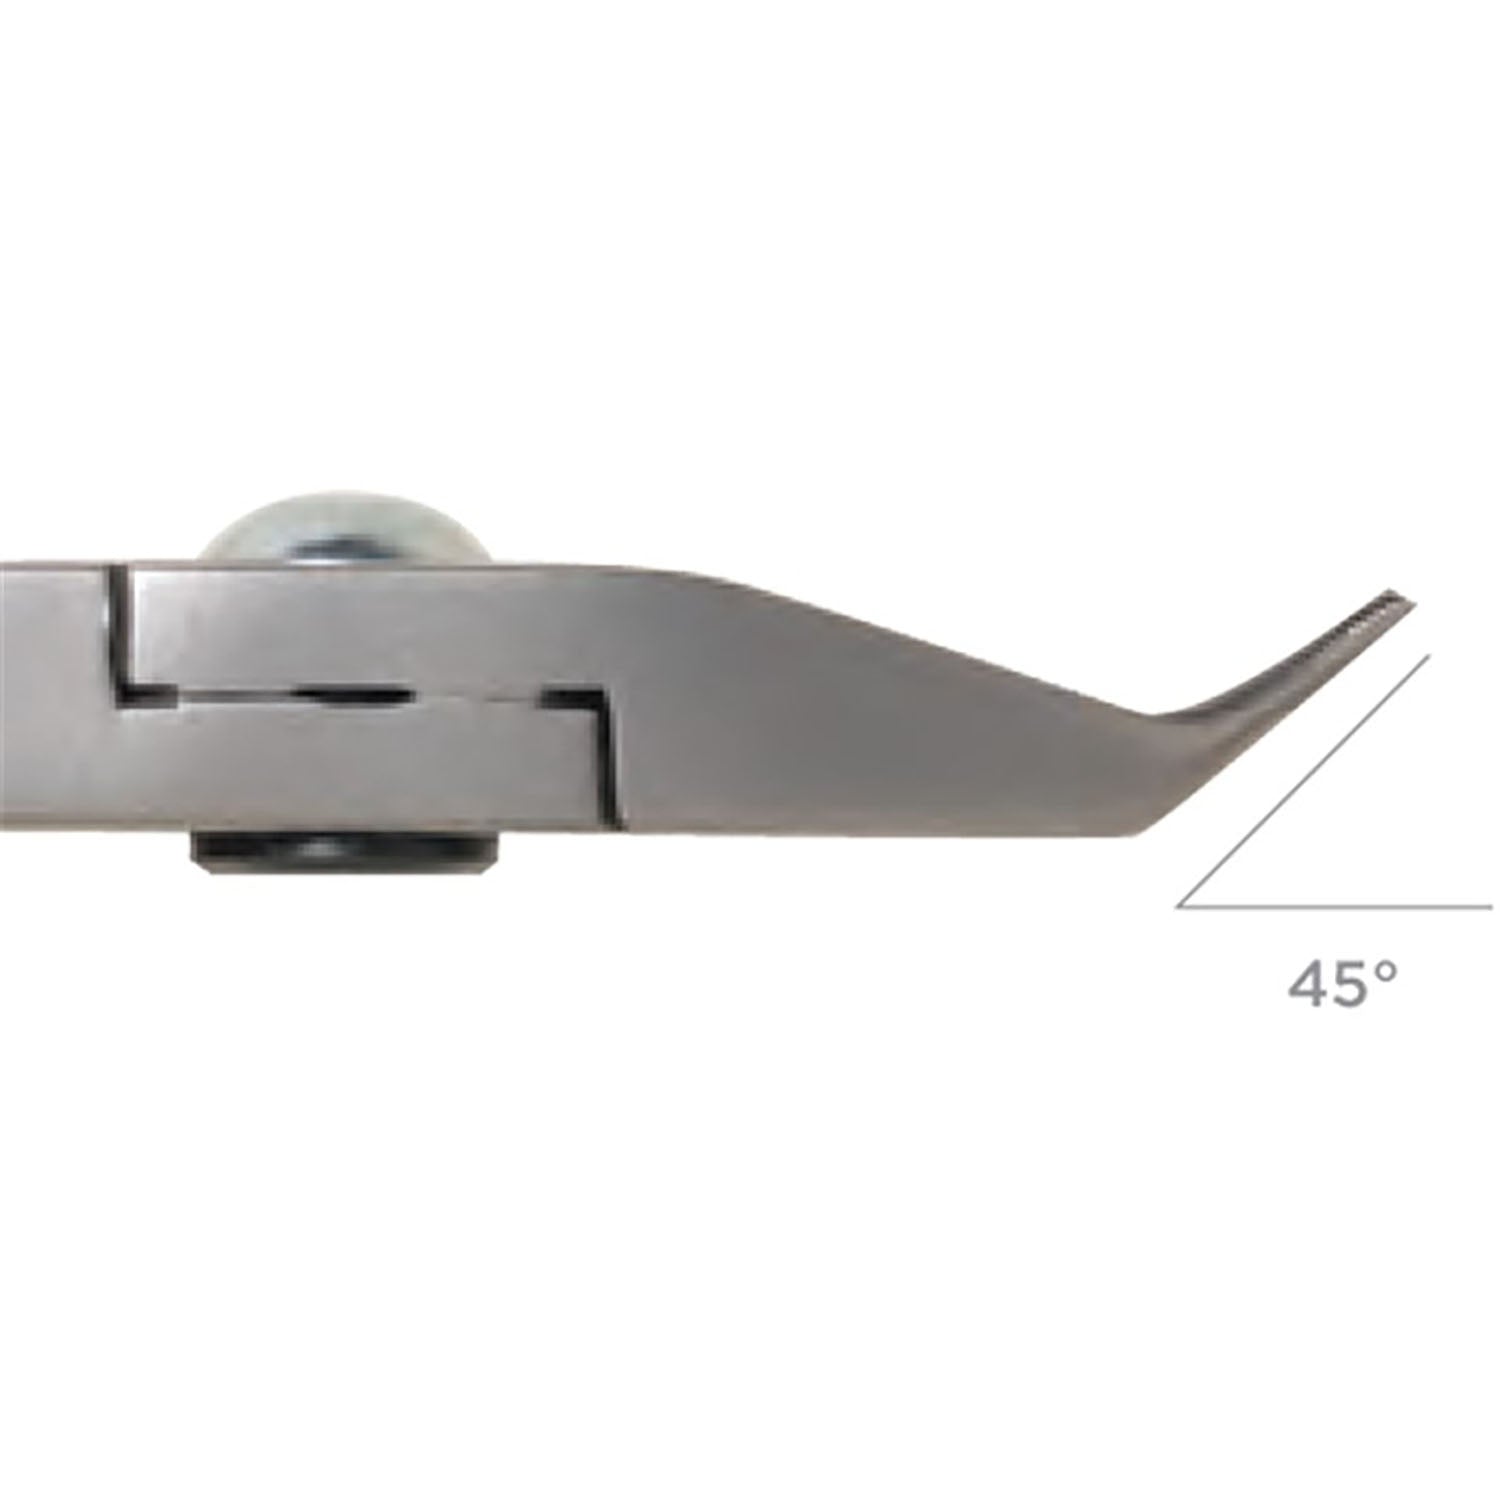 PL30524 = Tronex 524 Extra Long Needle Nose Pliers - Short Handle